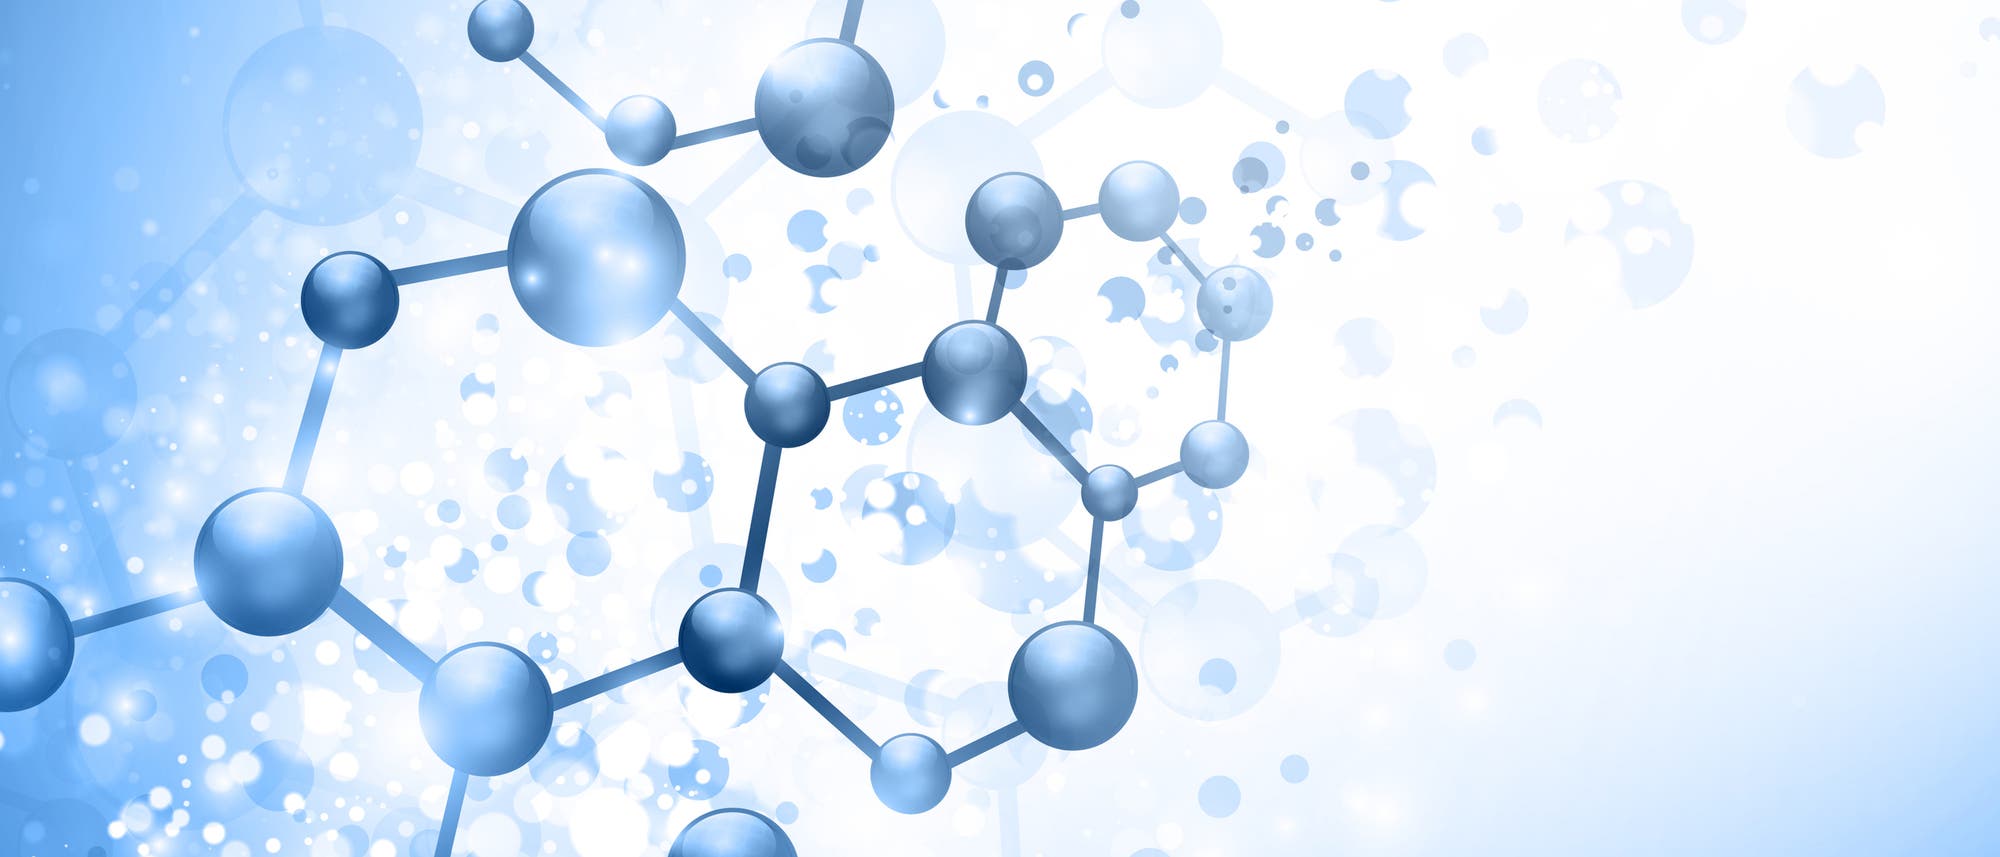 Illustration von Molekülen vor blauem Hintergrund mit hellem Verlauf in der Mitte.